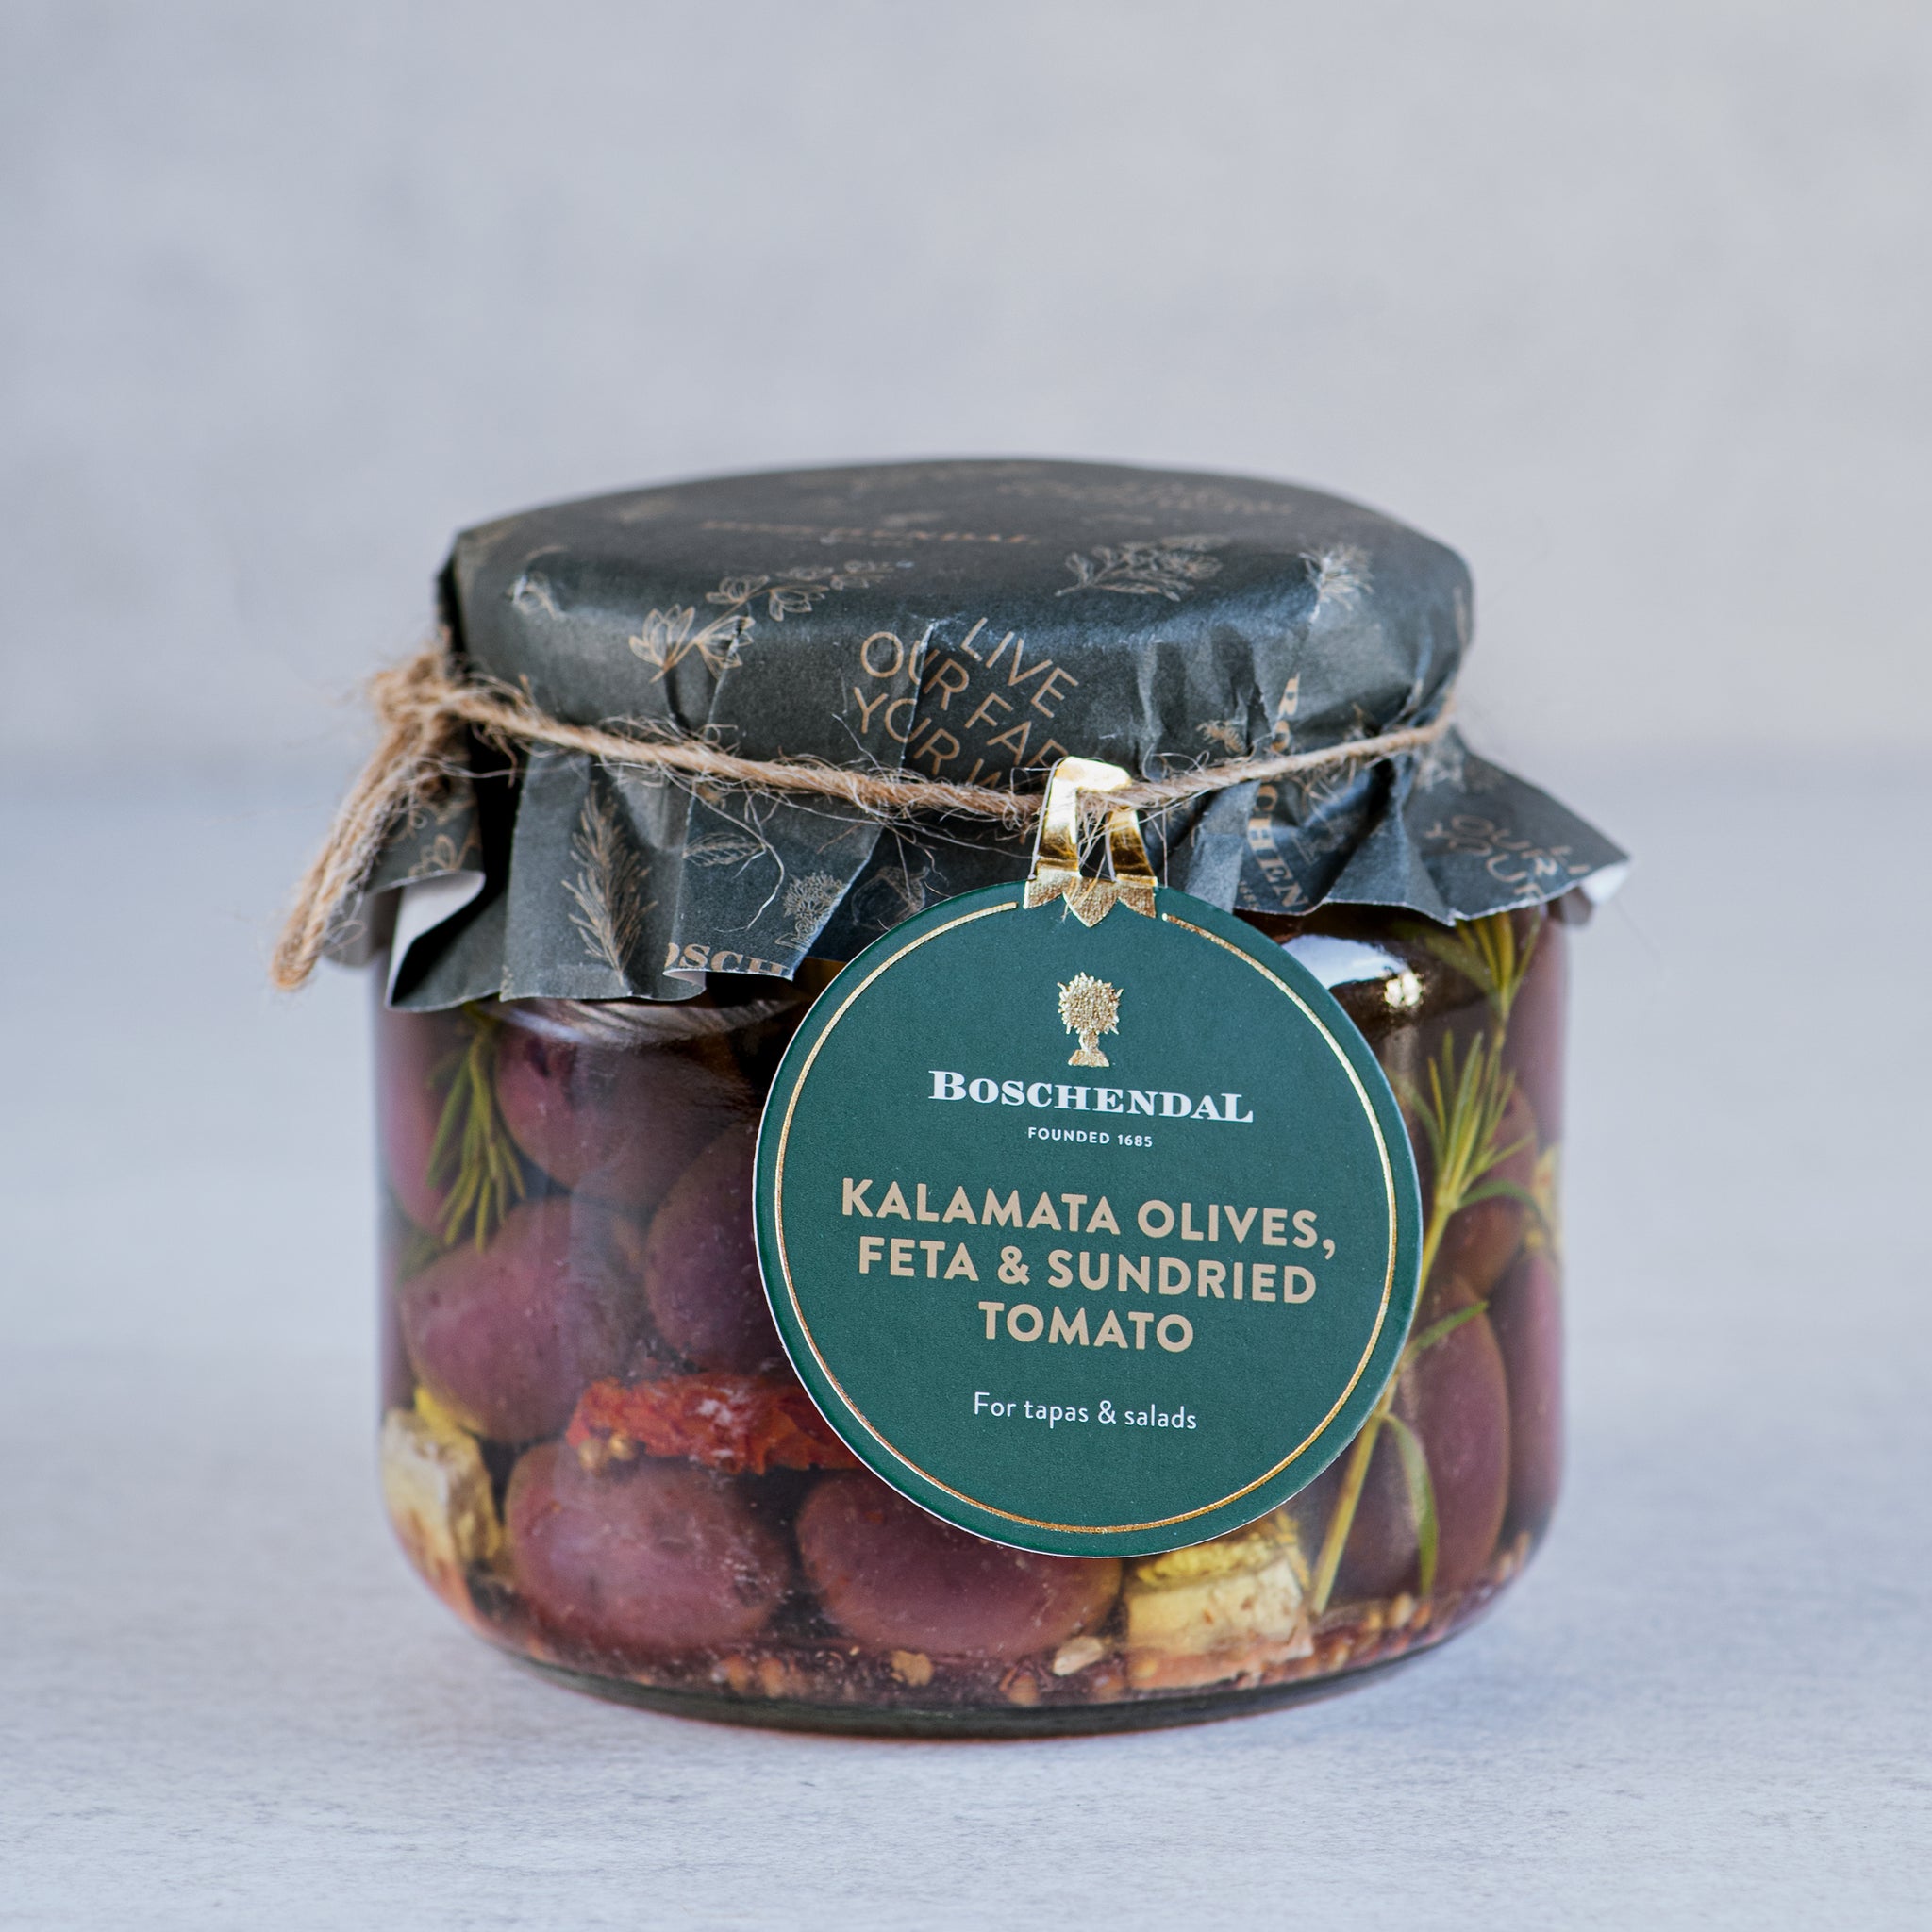 Kalamata Olives, Feta & Sundried Tomato 530g